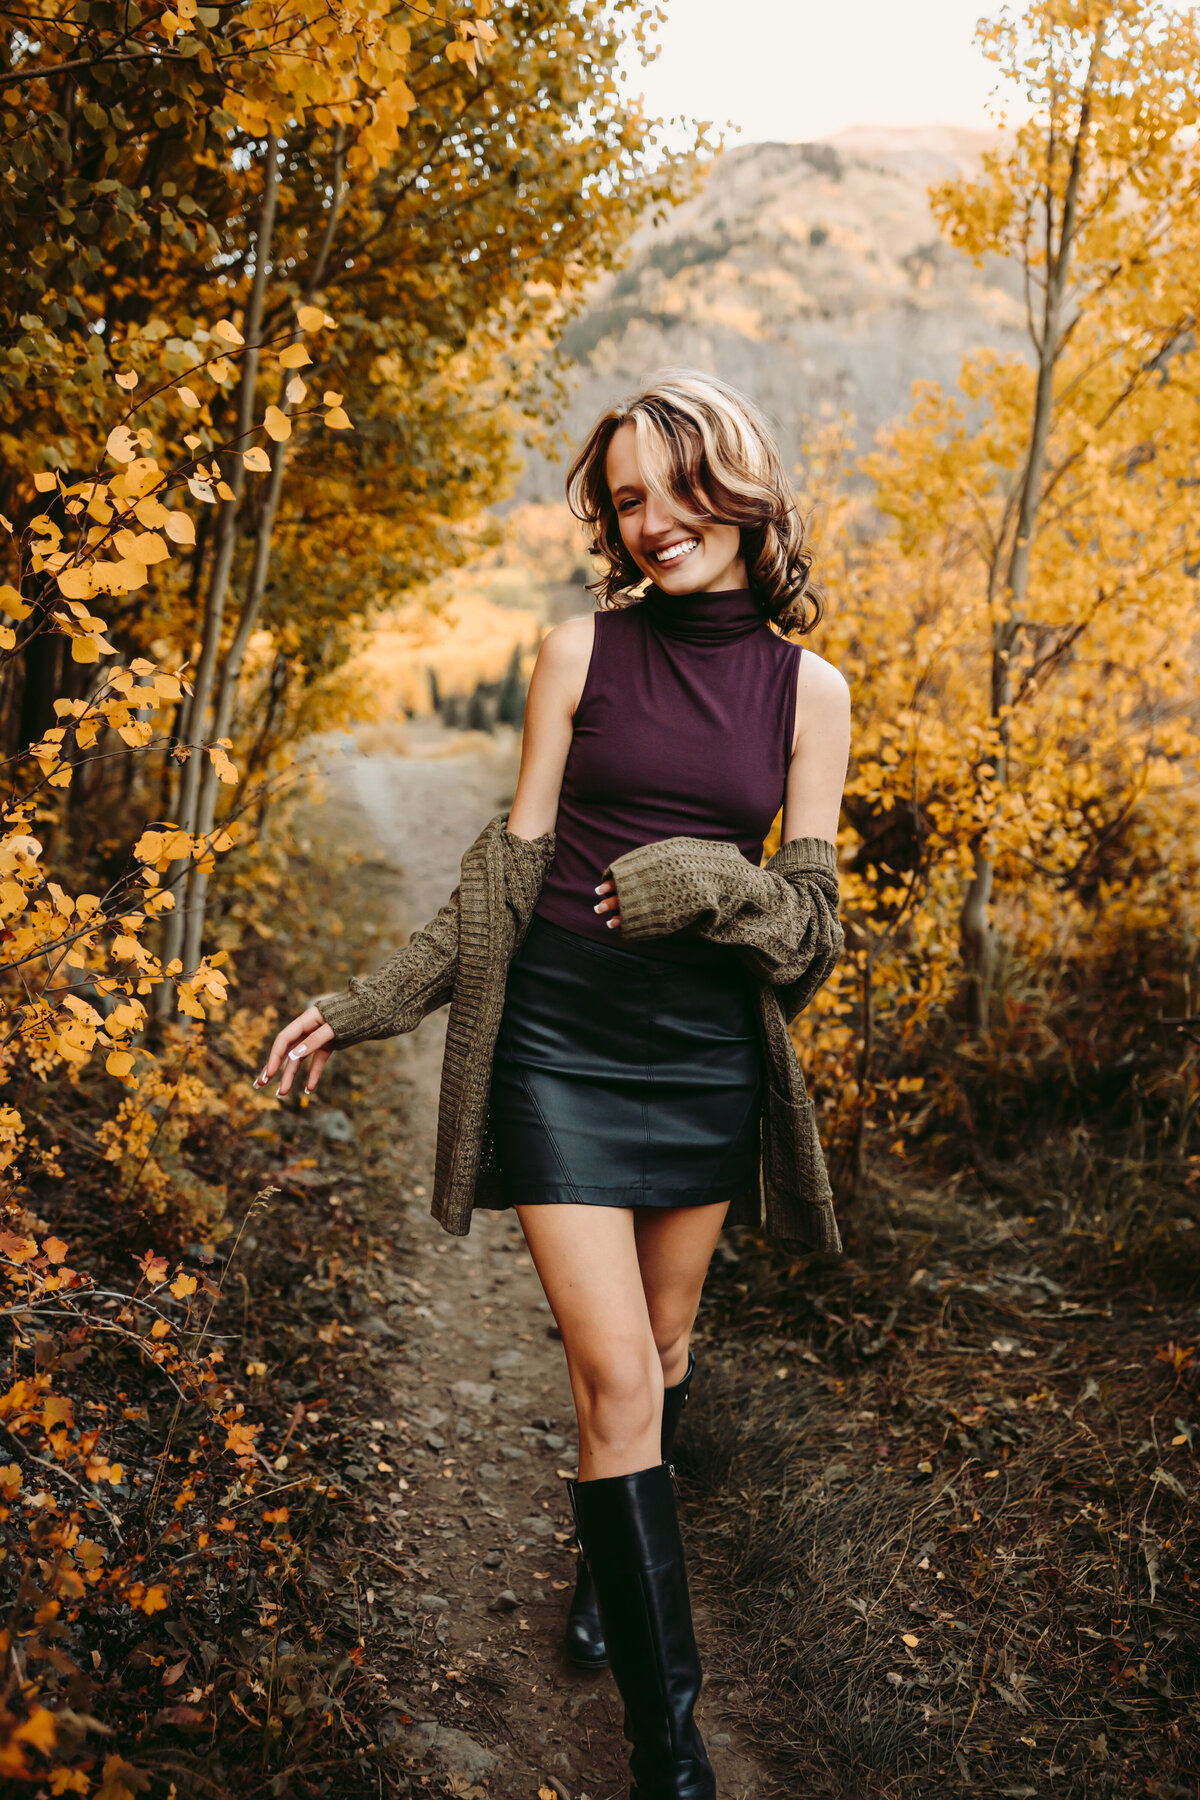 Jaleigh explores golden foliage in Ouray Colorado.